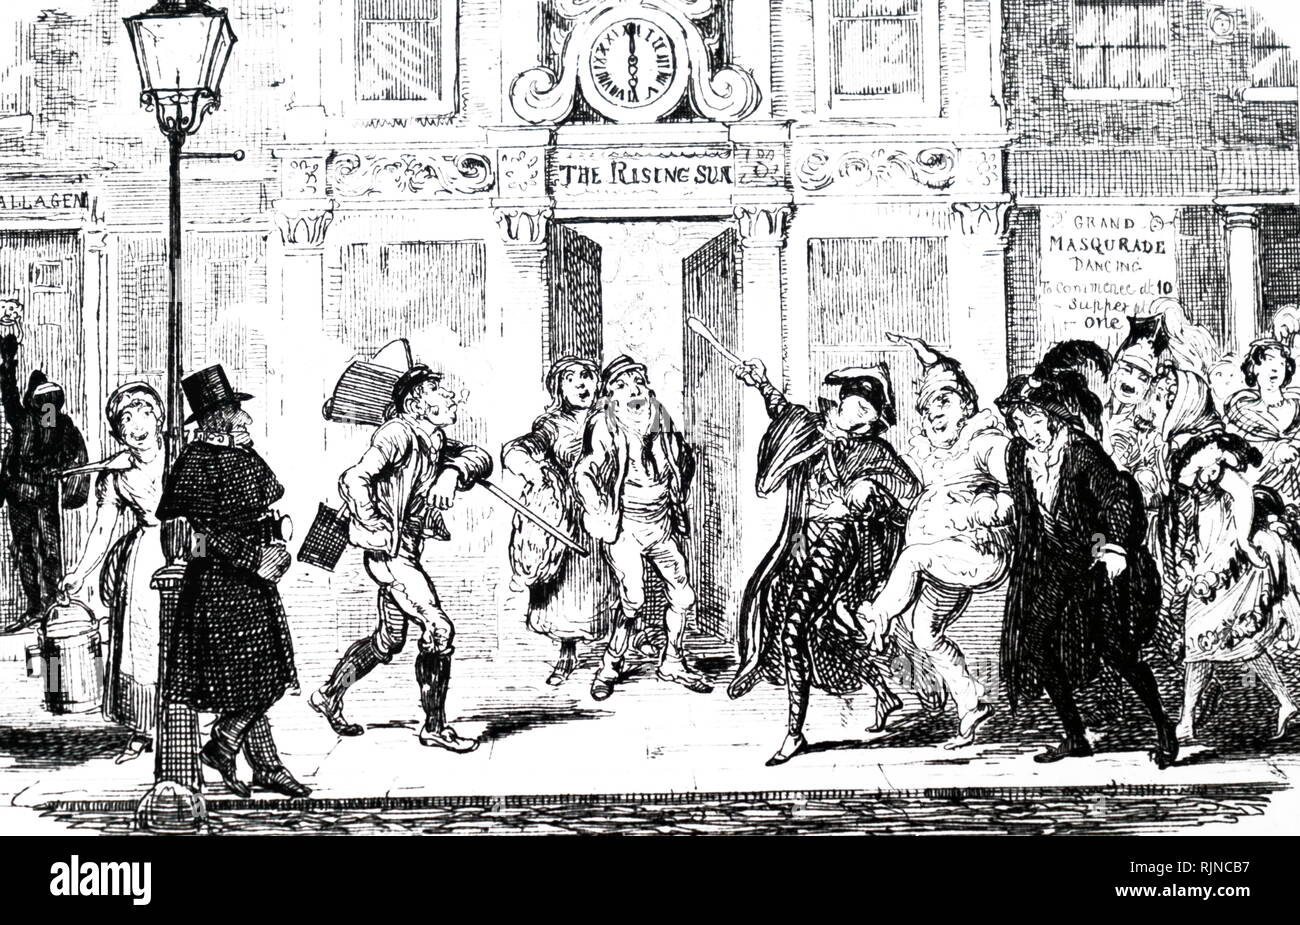 Una caricatura de una calle de Londres con escenas de juerguistas que regresan a casa como las clases trabajadoras comienzan su jornada de trabajo. Fecha del siglo XIX Foto de stock